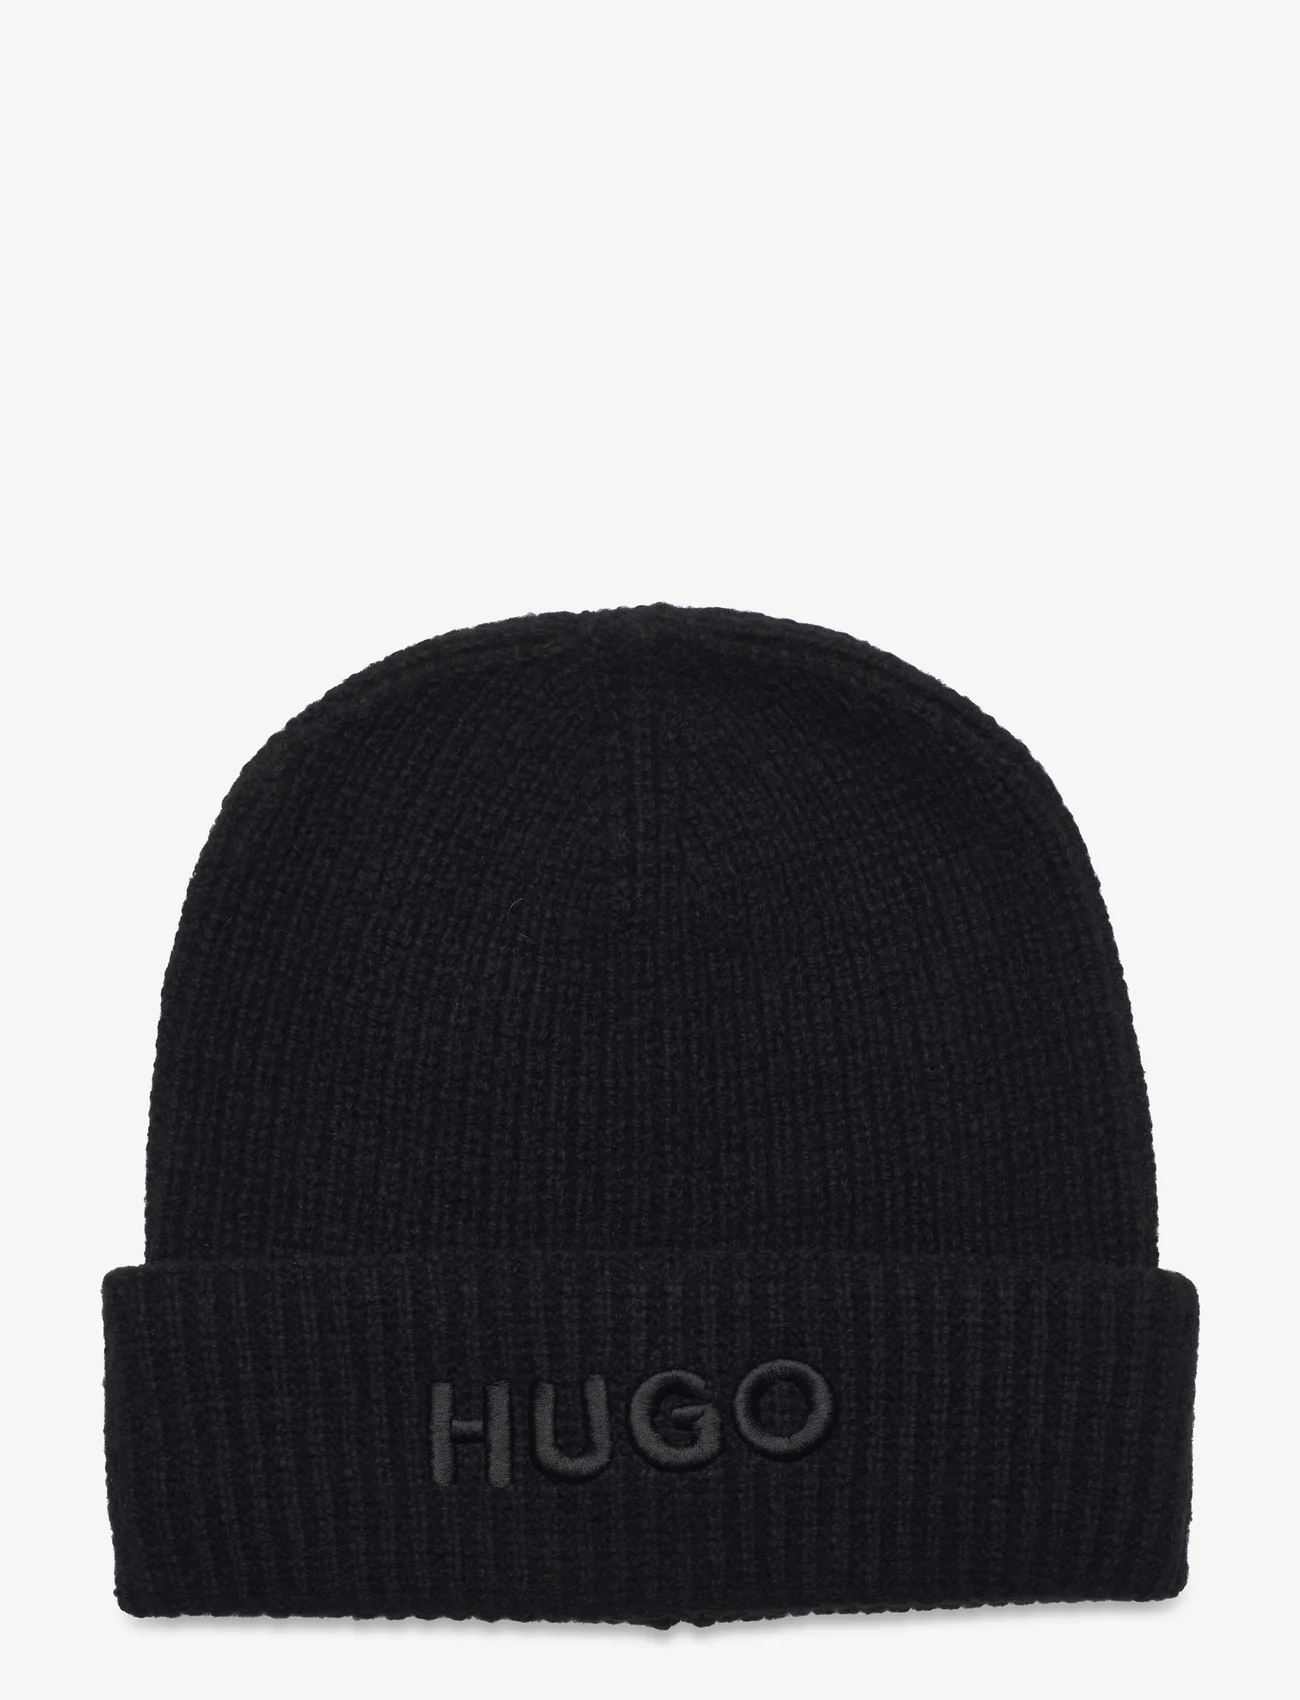 HUGO - Social_hat - luer - black - 0